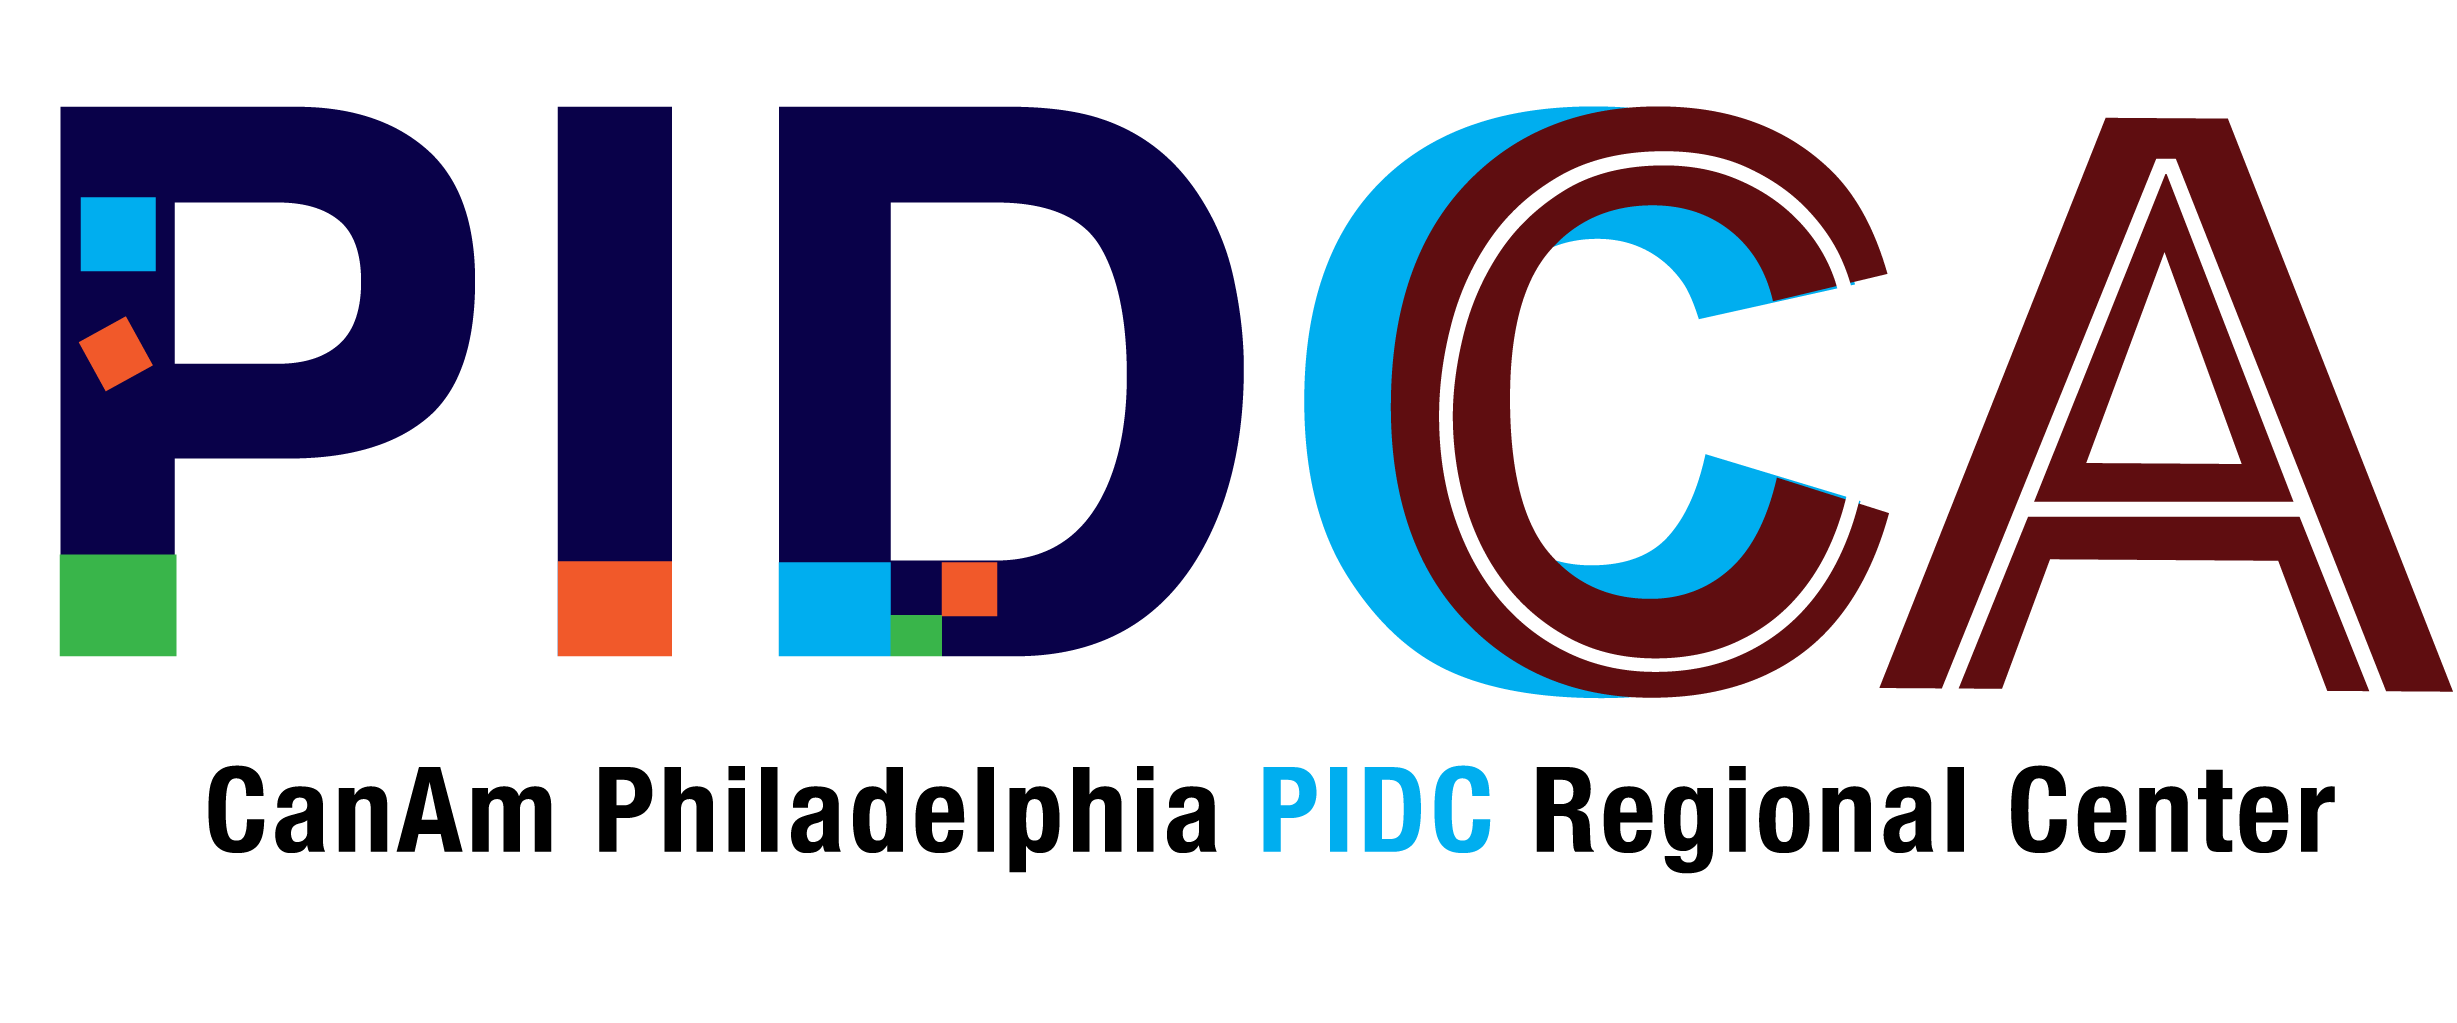 PIDC-canam-regional-center-eb5